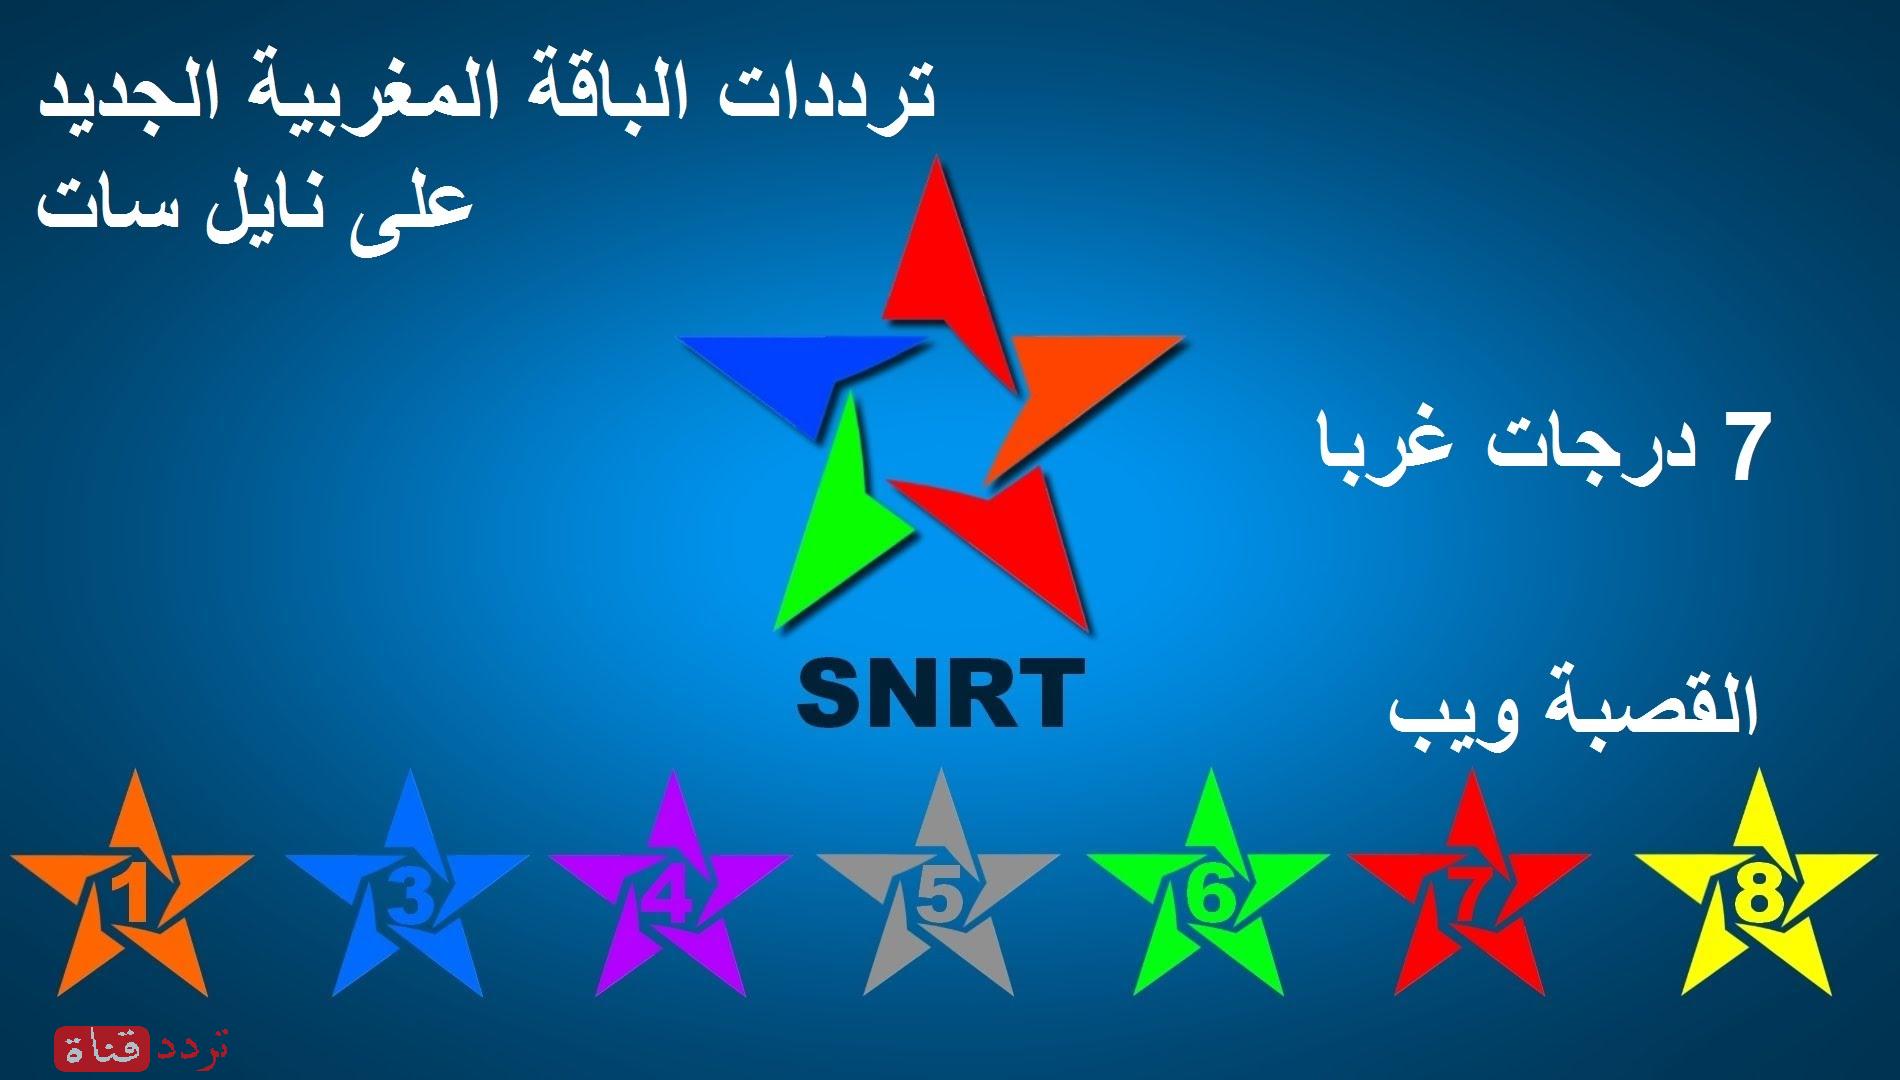 تردد قناة المغربية الخامسة على النايل سات 2018 تردد Almaghribia 5 الجديد